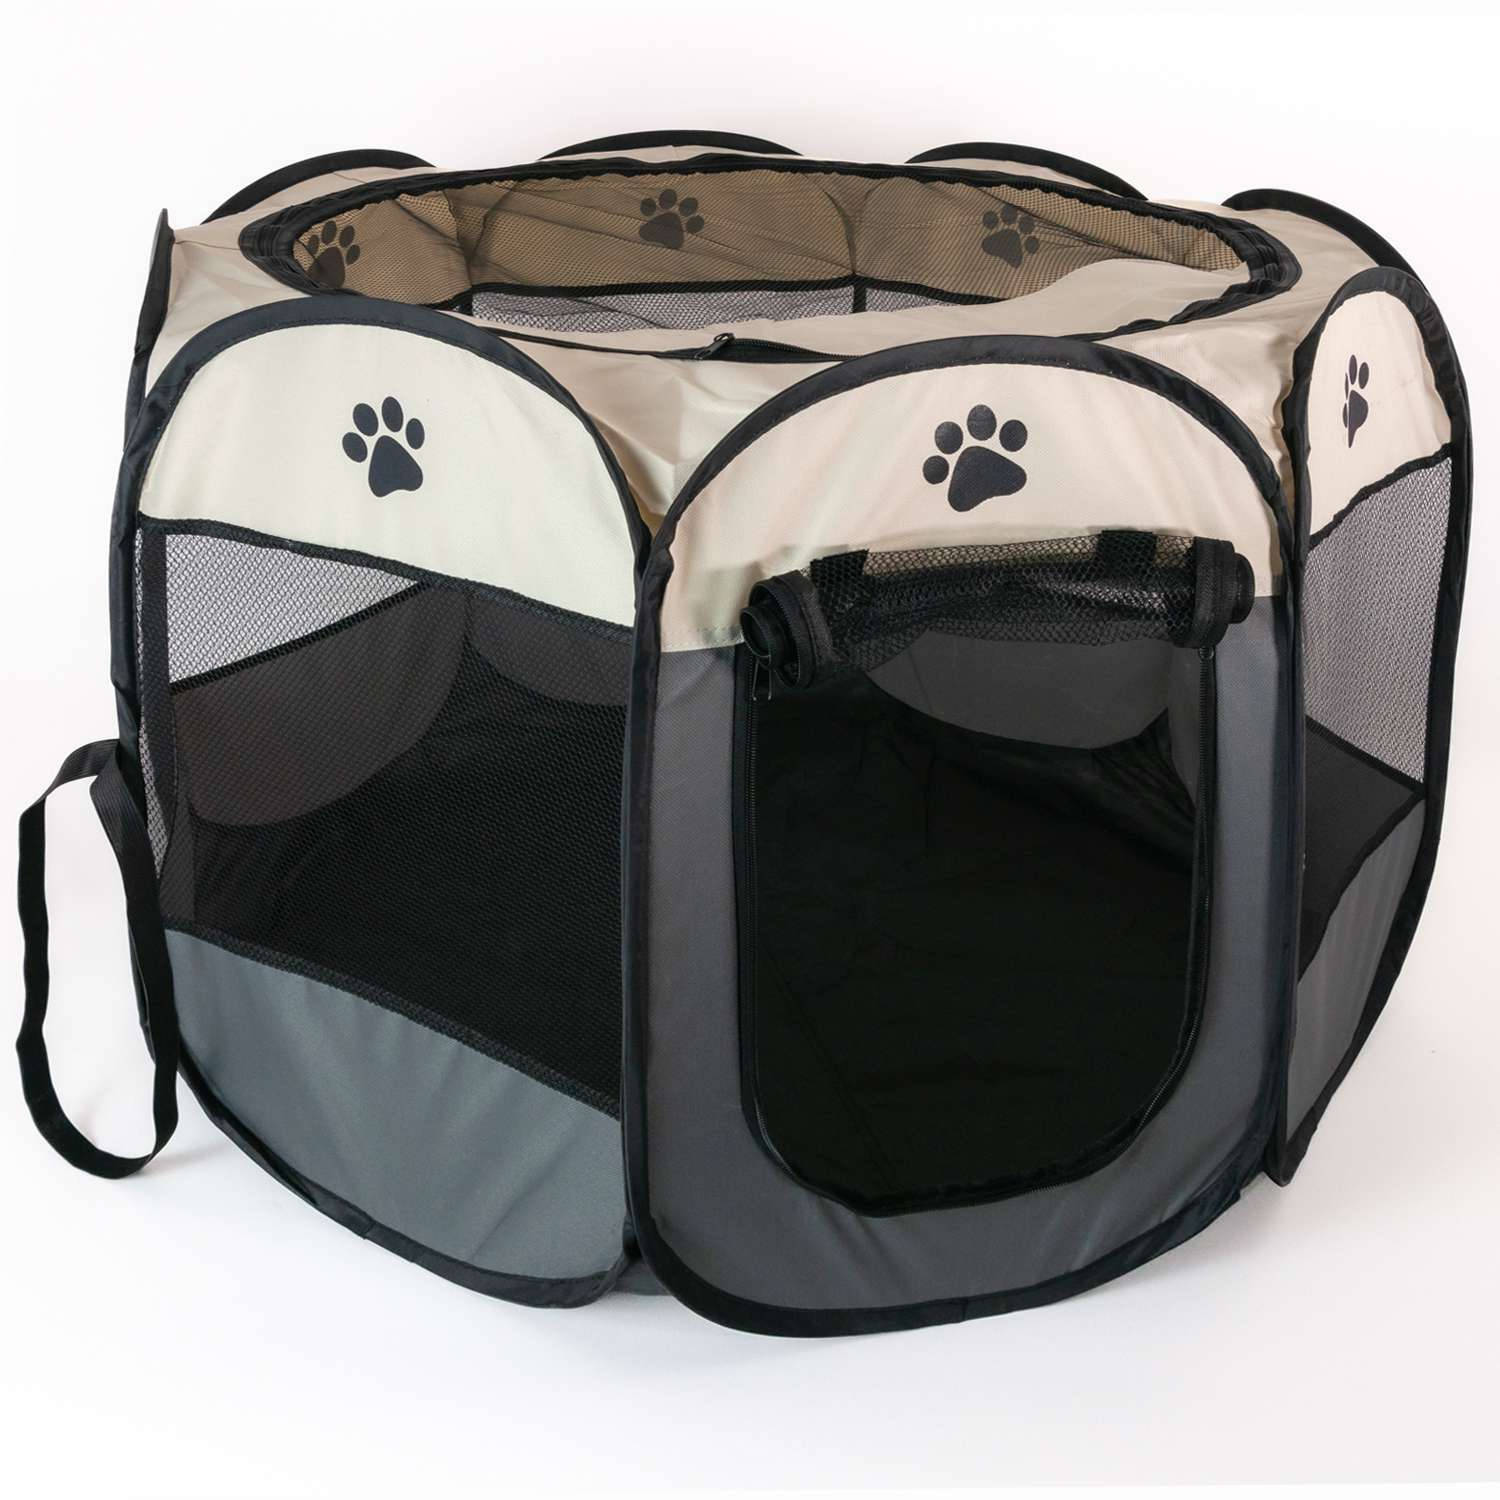 Intirilife Praktische dierenbox 77 x 58 cm Oxford stoffen speeltent in Grijs met pootjes - Voor honden katten of konijnen om te vervoeren spelen en rusten